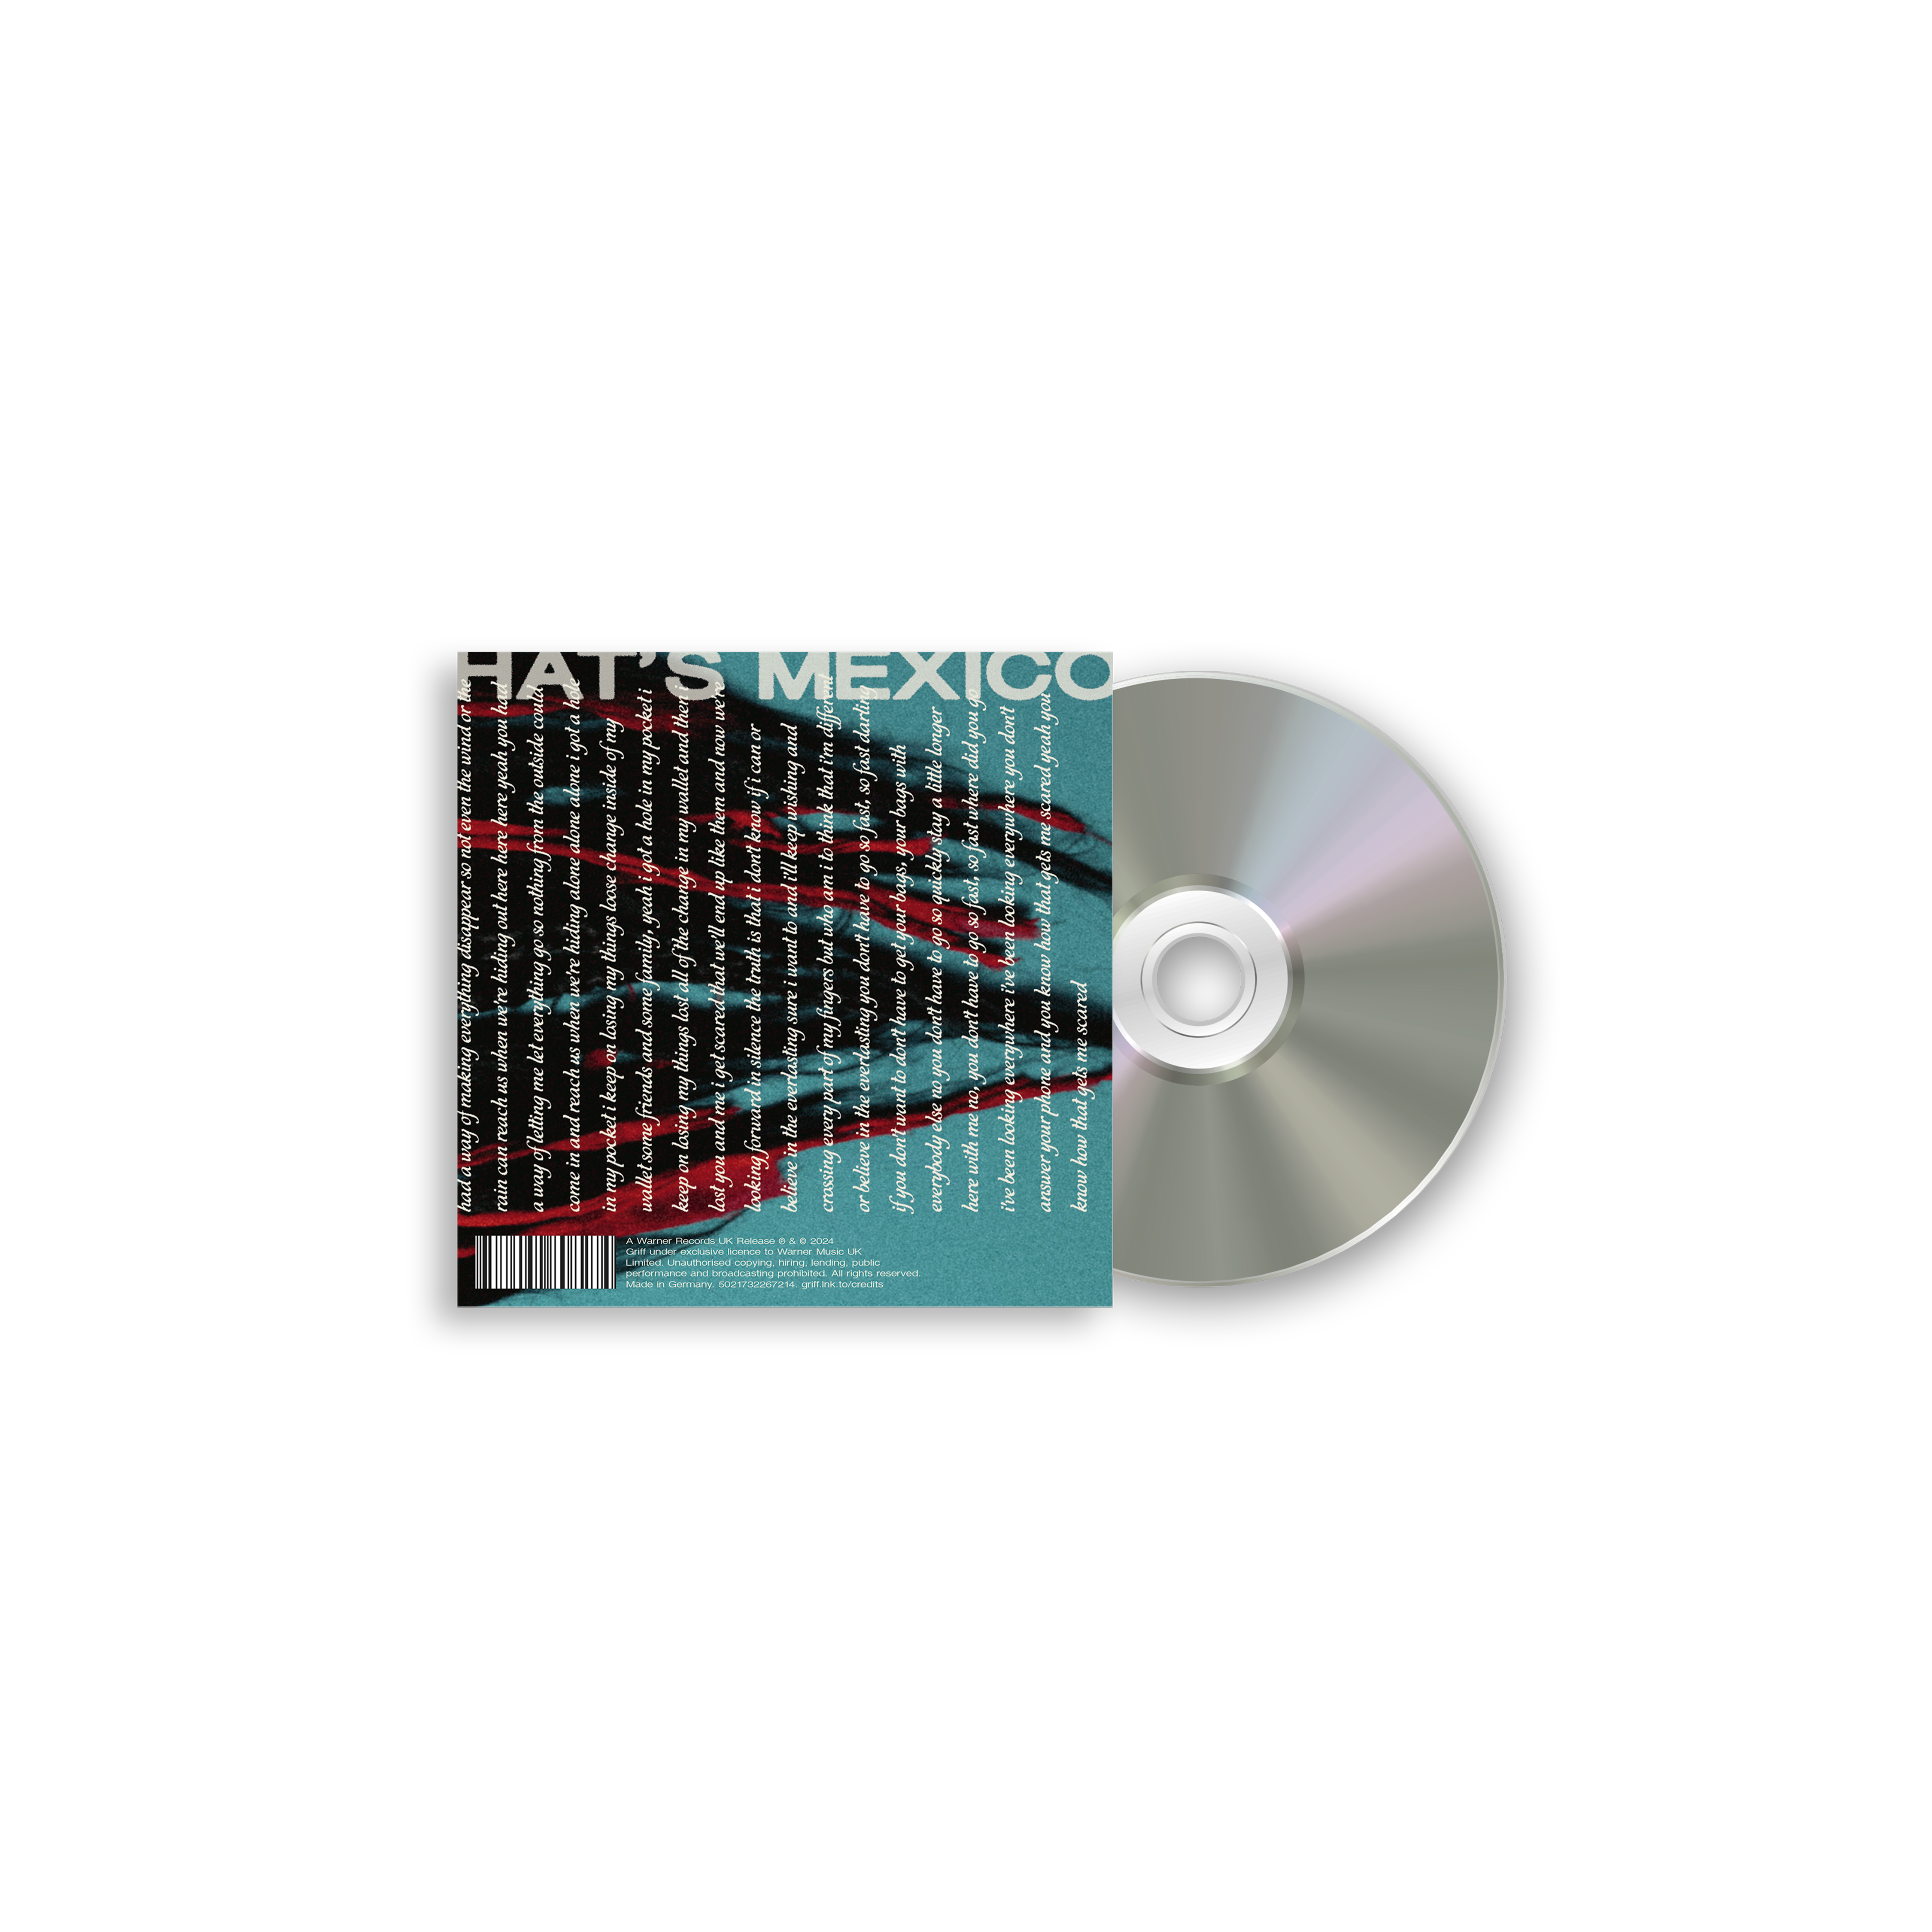 Vertigo Exclusive Sleeve CD #3